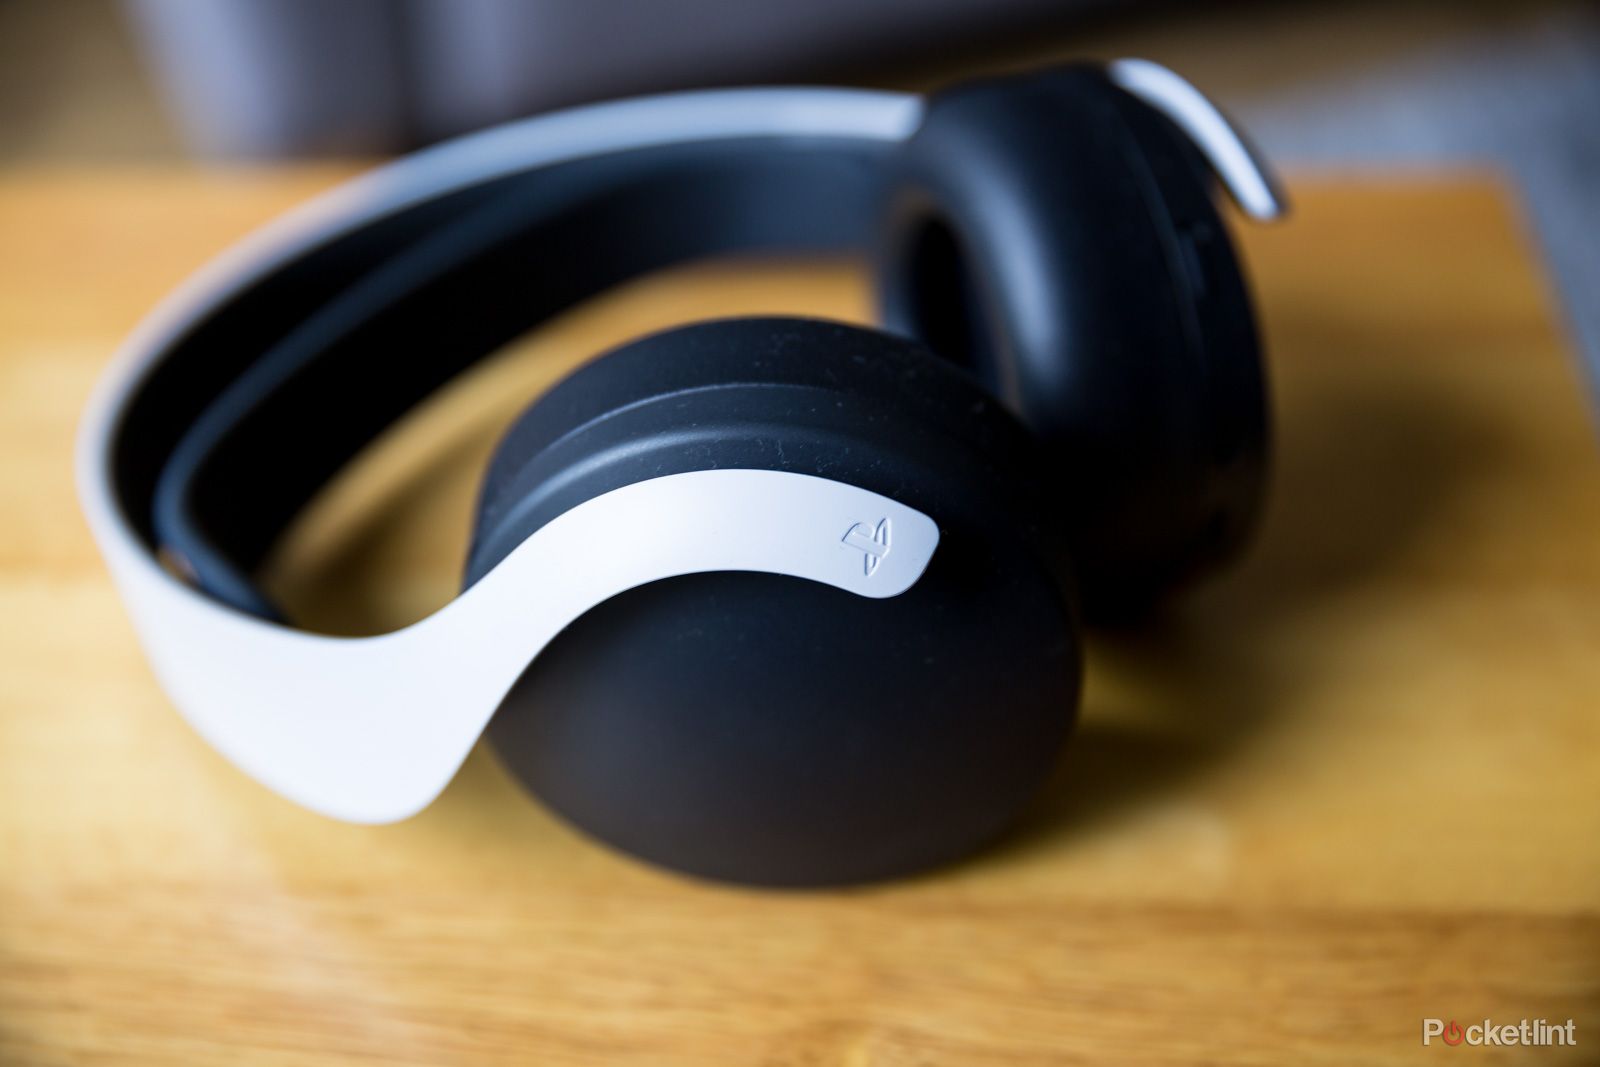 Mejores auriculares inalámbricos para PS5: Pulse 3D de Sony y más